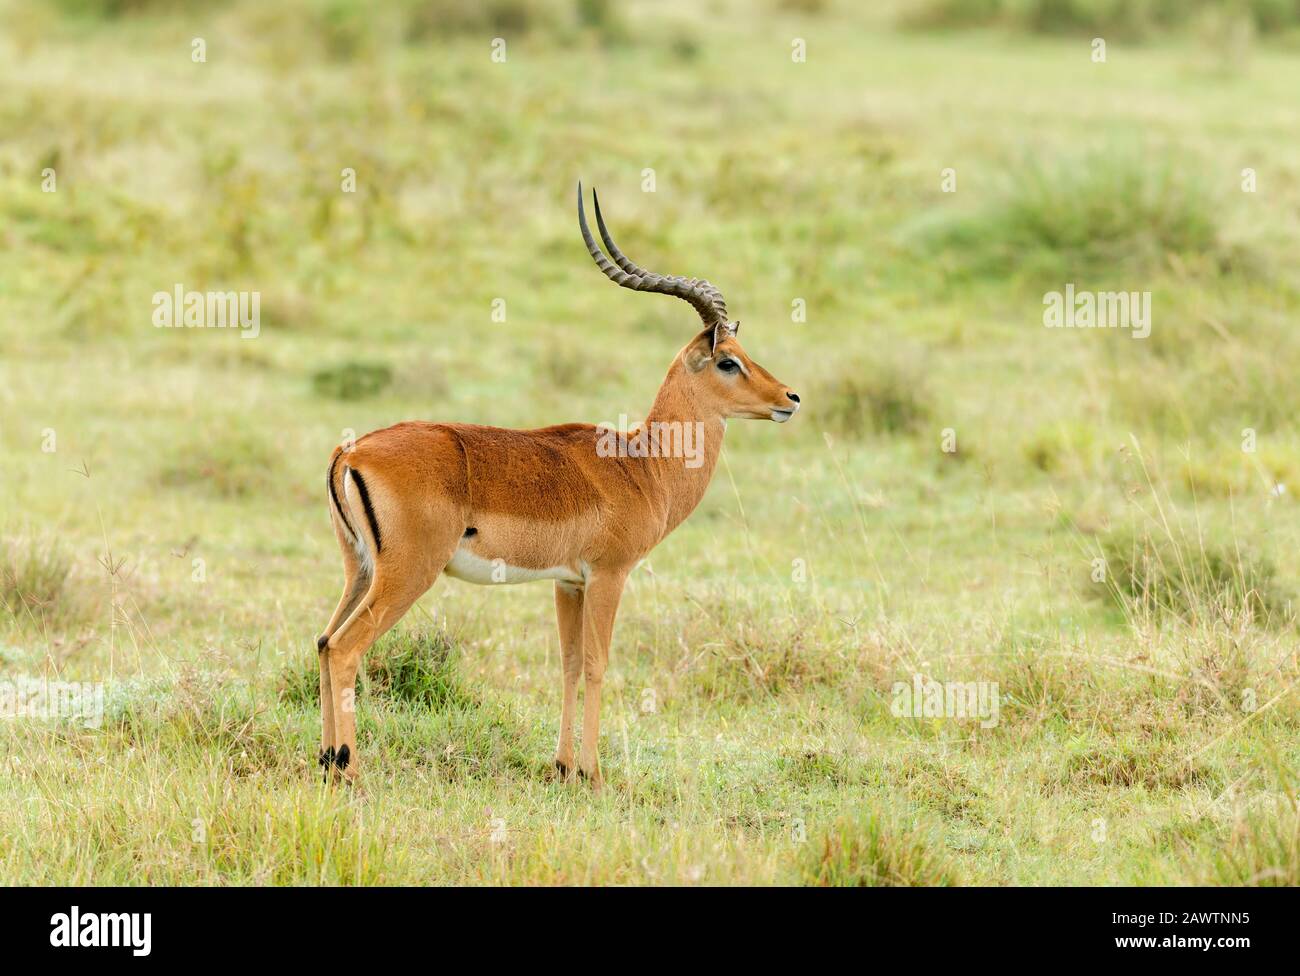 Impala Gazelle medium-sized antelope, Amboseli, Africa Stock Photo